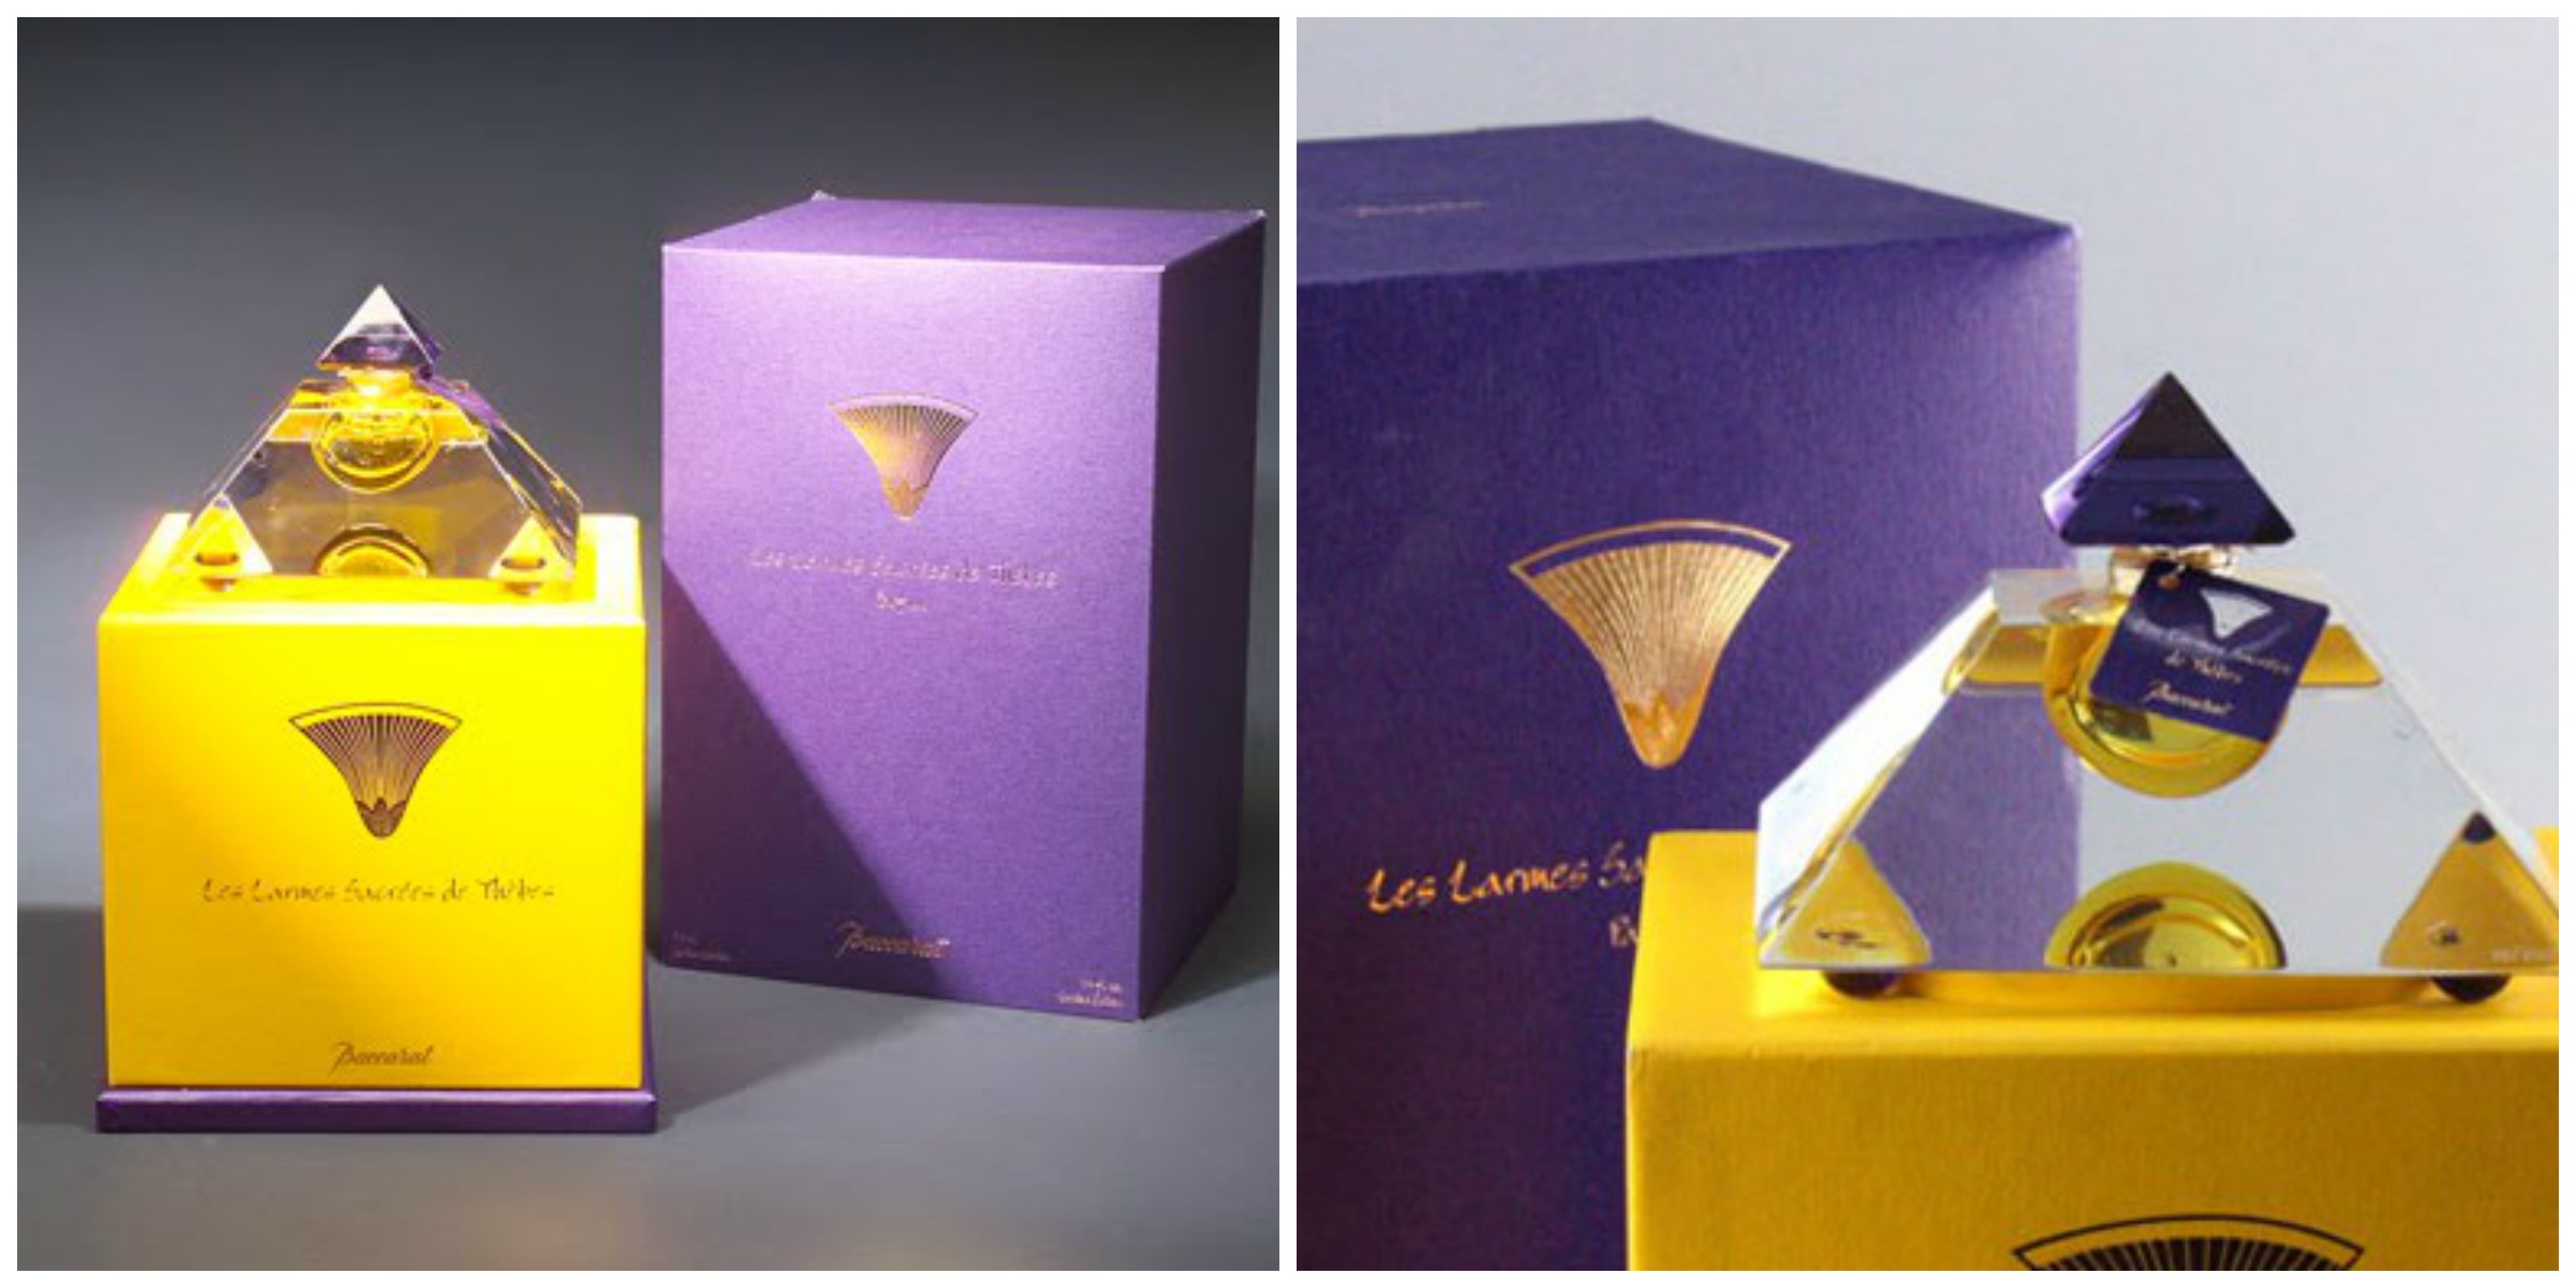 Пирамидка Baccarat's Les Larmes Sacrées de Thebe за 1 700 долларов